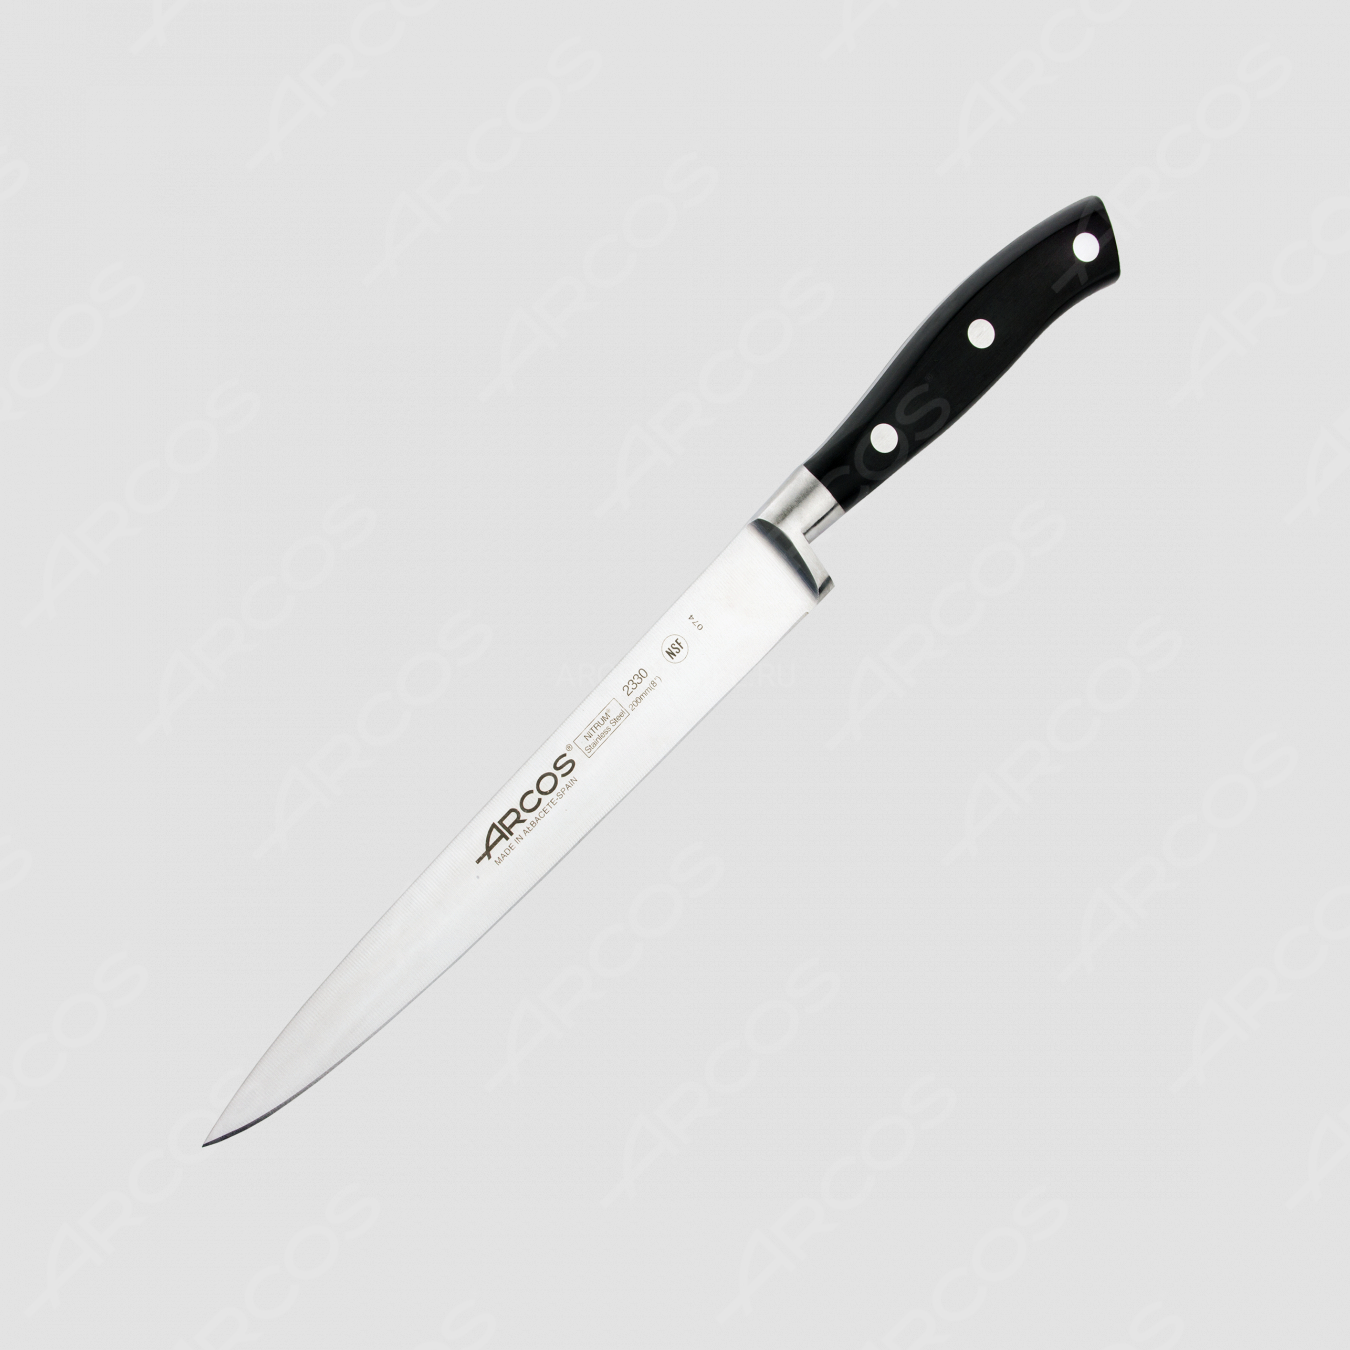 Нож кухонный для резки мяса 20 см, серия Riviera, ARCOS, Испания